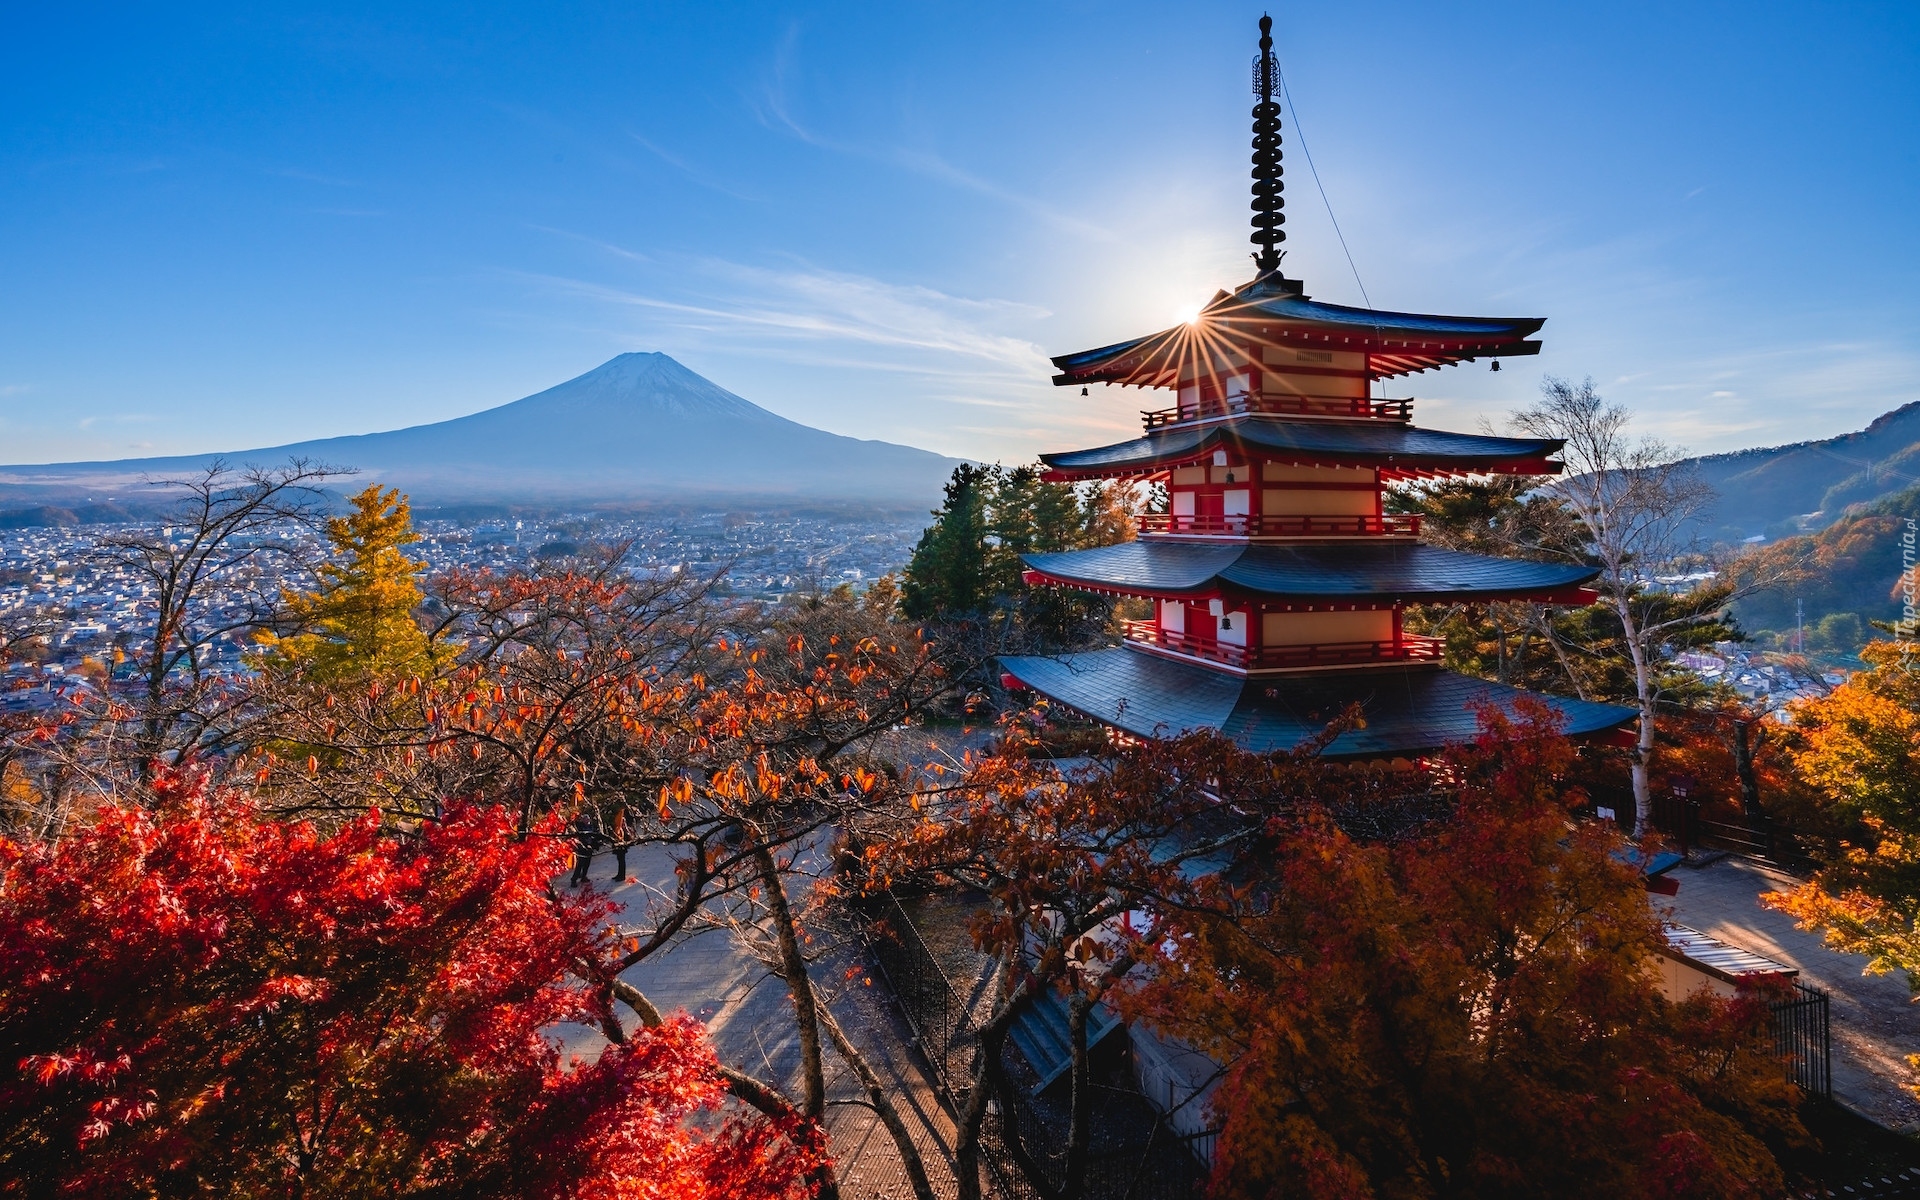 Świątynia, Chureito Pagoda, Góra, Fudżi, Mount Fuji, Drzewa, Promienie słońca, Jesień, Miasto Fujiyoshida, Prefektura Yamanashi, Wyspa Honsiu, Japonia